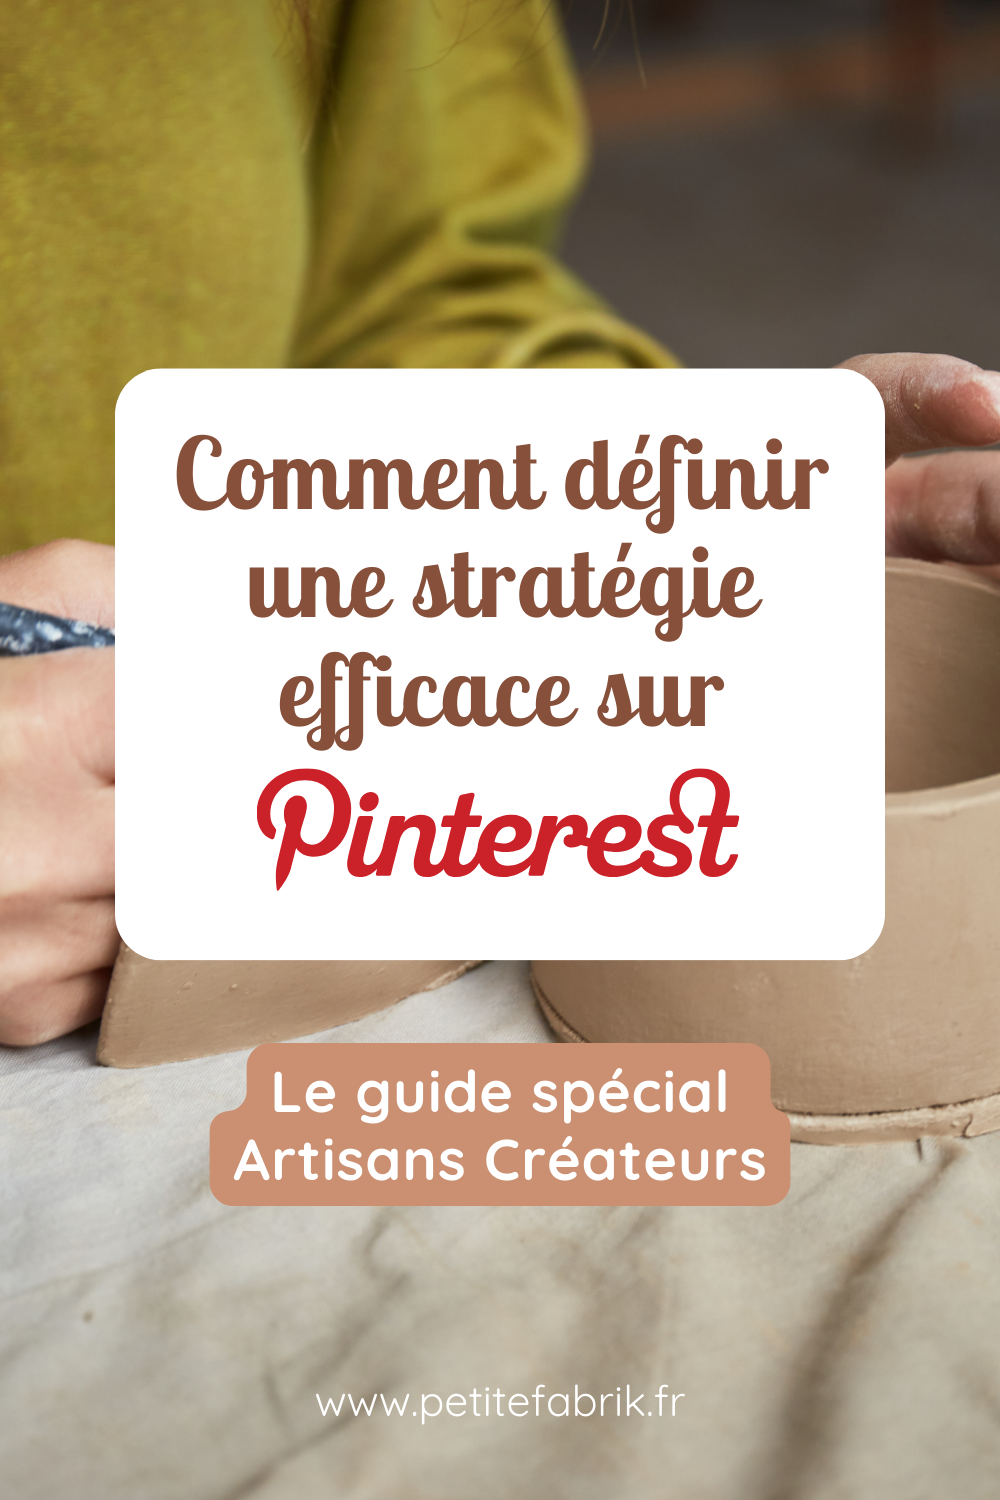 Comment définir une stratégie efficace sur Pinterest ? Le guide